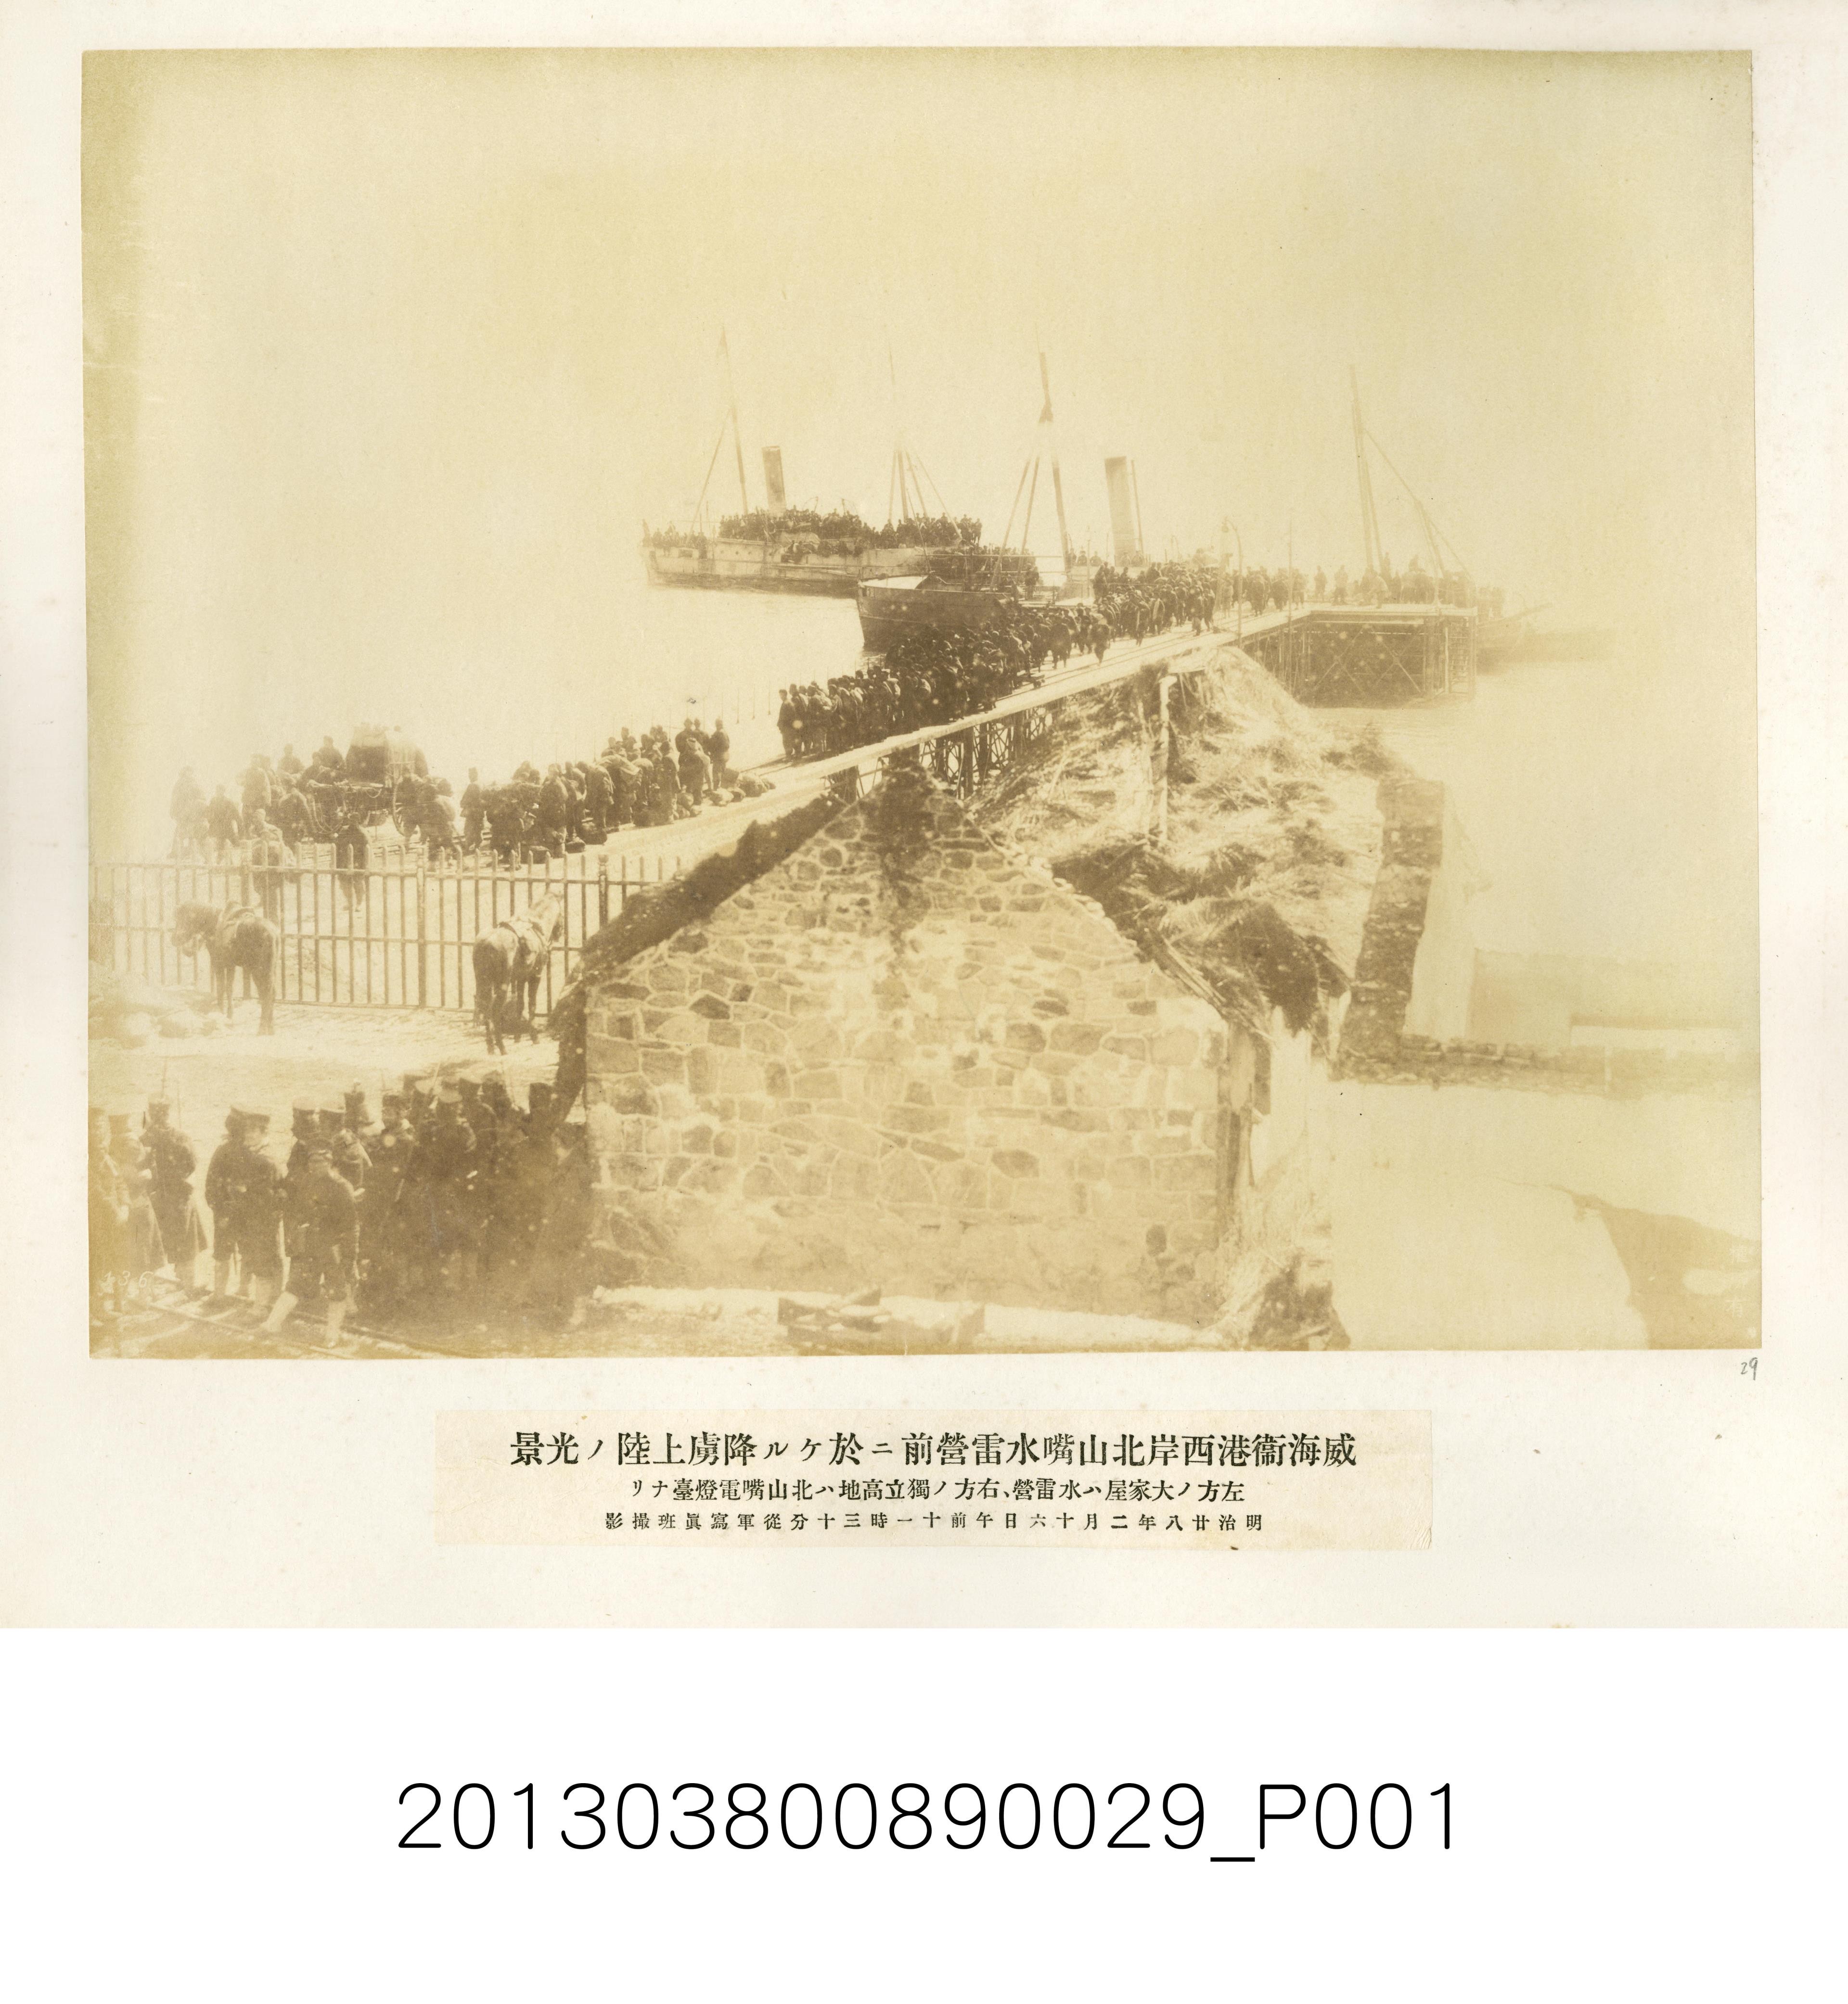 俘虜於威海衛港西岸北山嘴水雷營前上岸 (共1張)